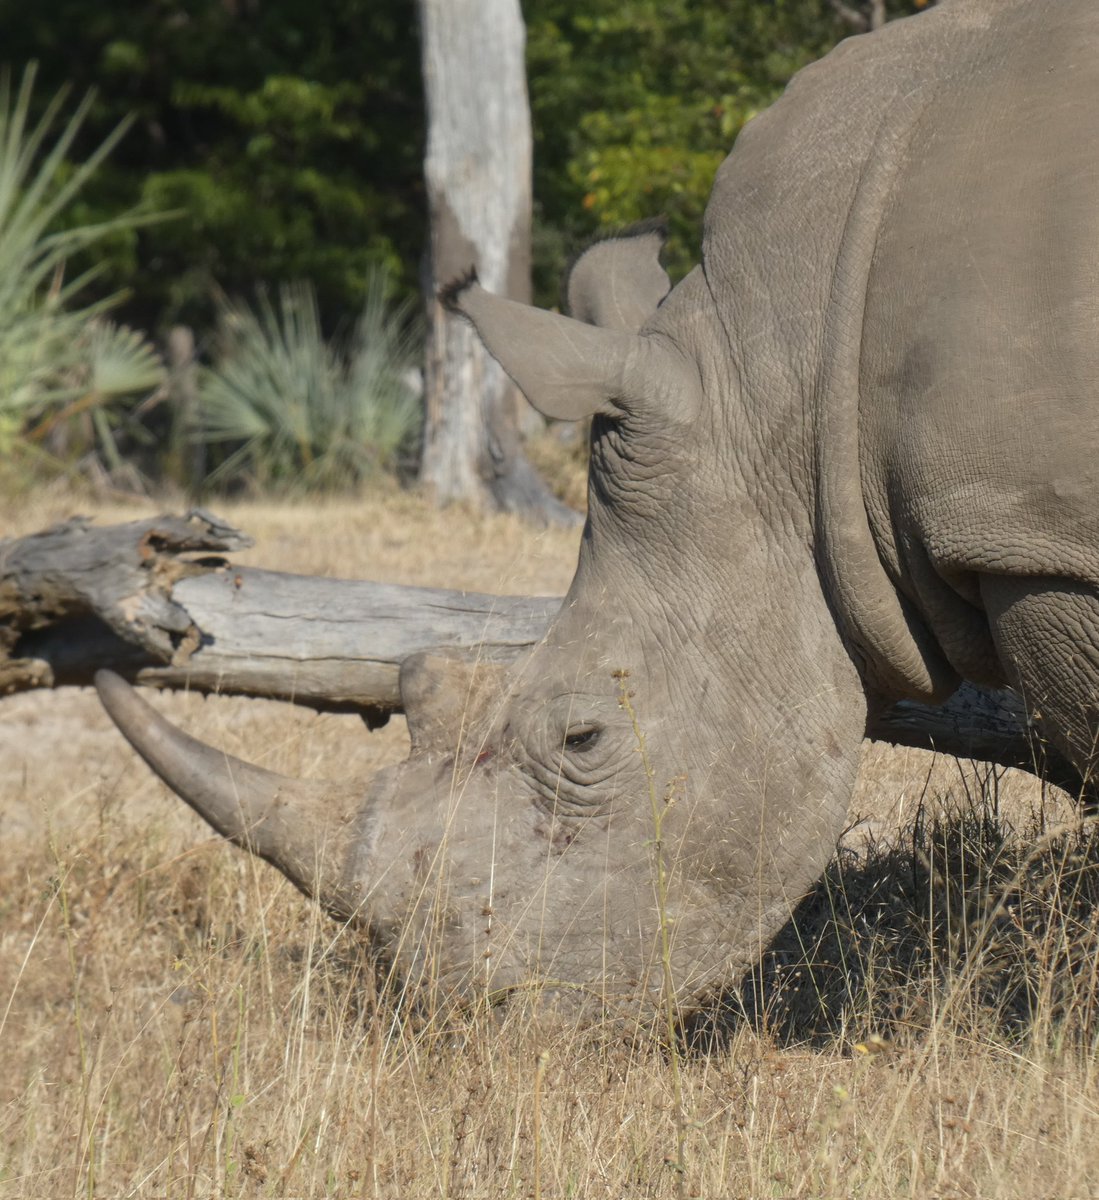 #whiterhinoceros #whiterhino #rhino #シロサイ #サイ #safari #safariafrica #gamedrive #wildanimals #wildlife #mosioatunya #zambezi #livingstone #Zambia #africa #サファリ #ワイルドライフ #ゲームドライブ #モシオトゥニャ #ザンベジ #リビングストン #ザンビア #アフリカ #LUMIX